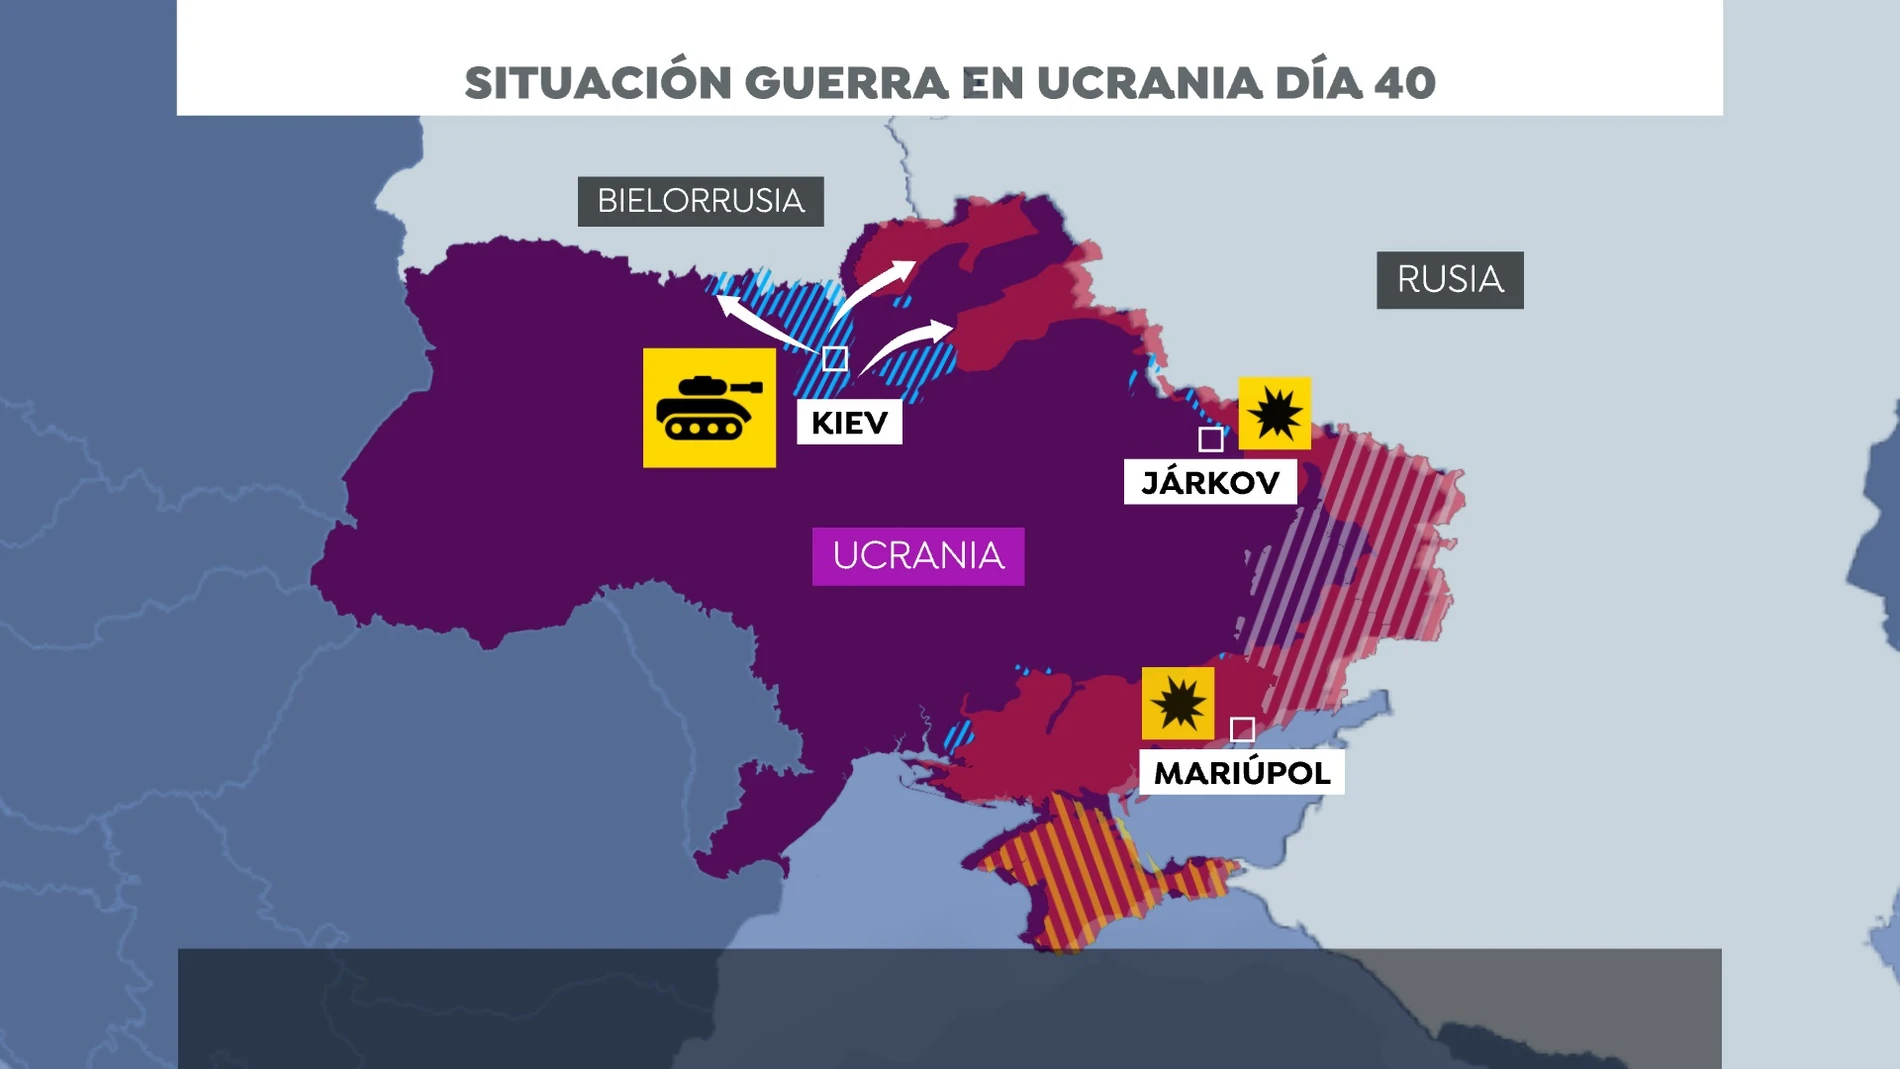 El mapa de la situación en Ucrania en el día 40 de guerra